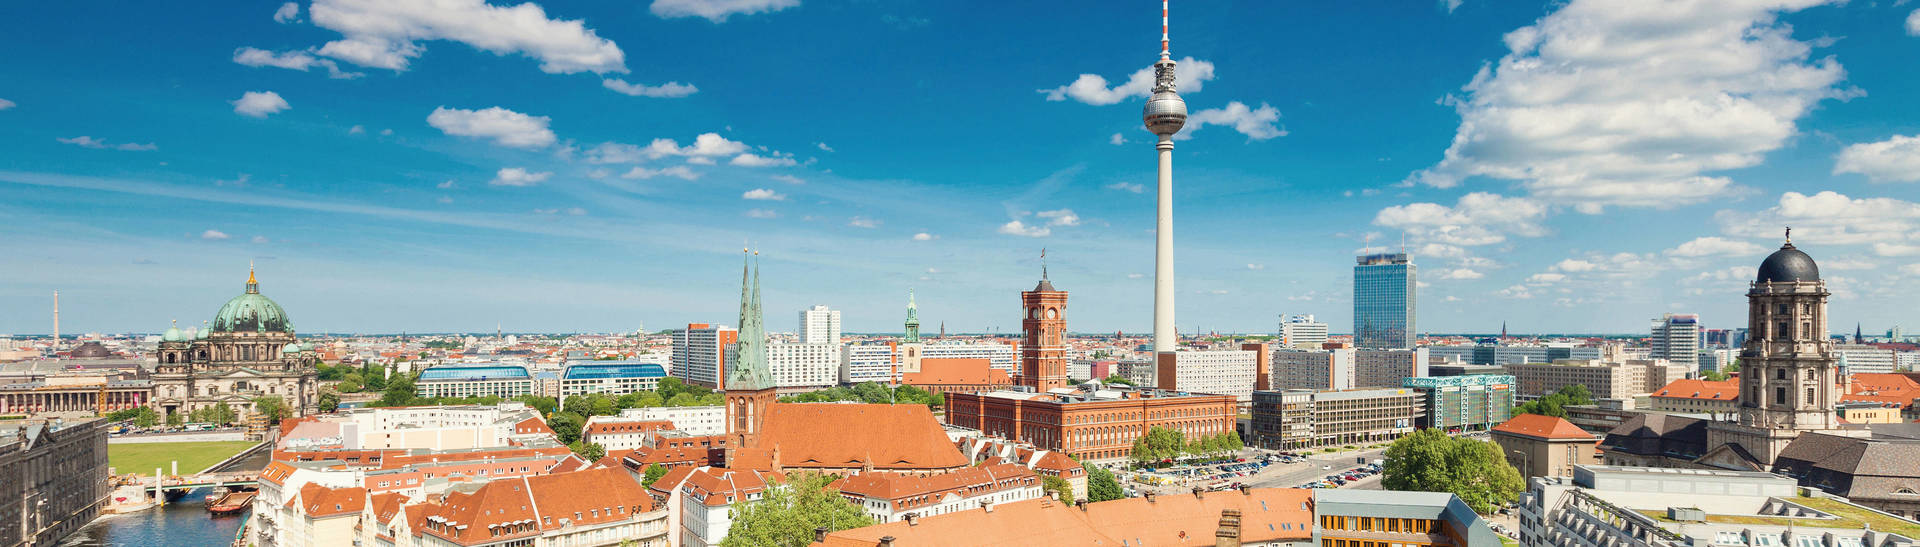 H4 Hotel Berlin Alexanderplatz - nel cuore della città